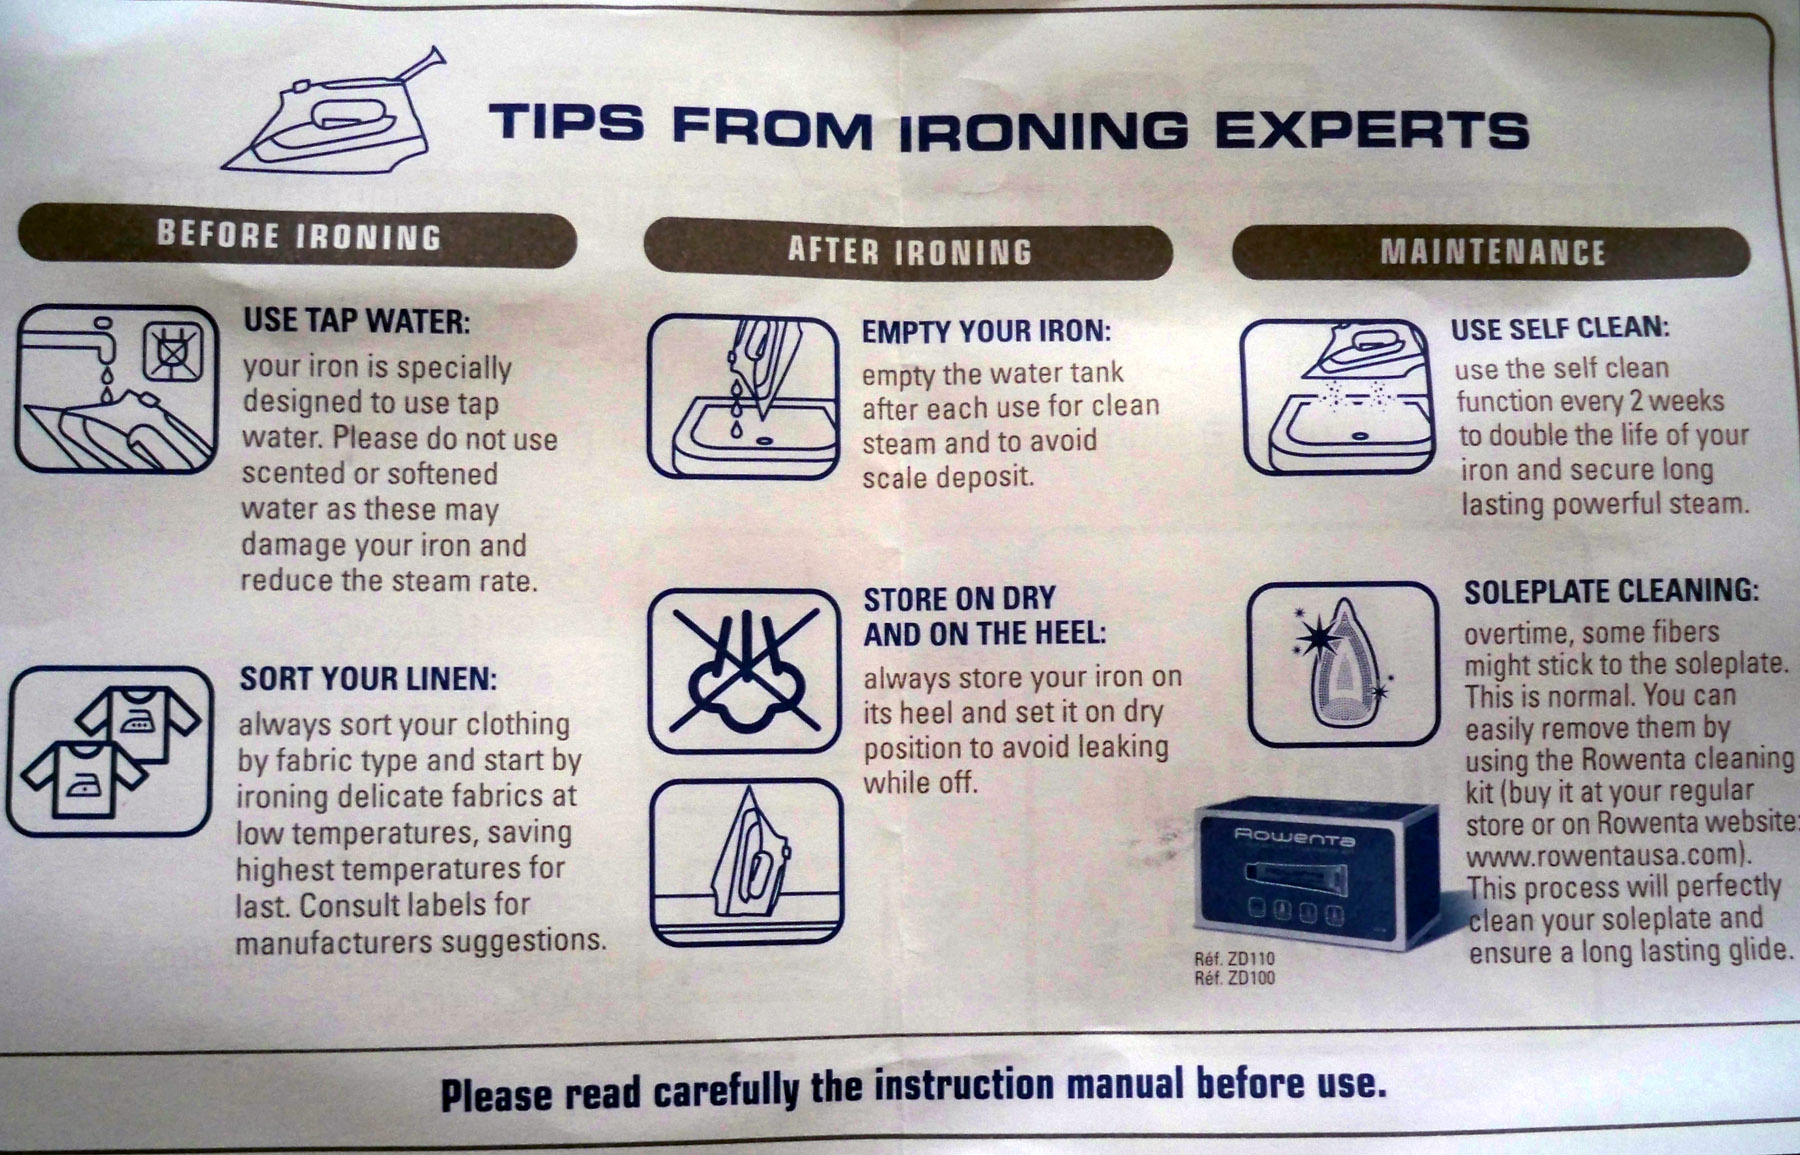 Iron tips